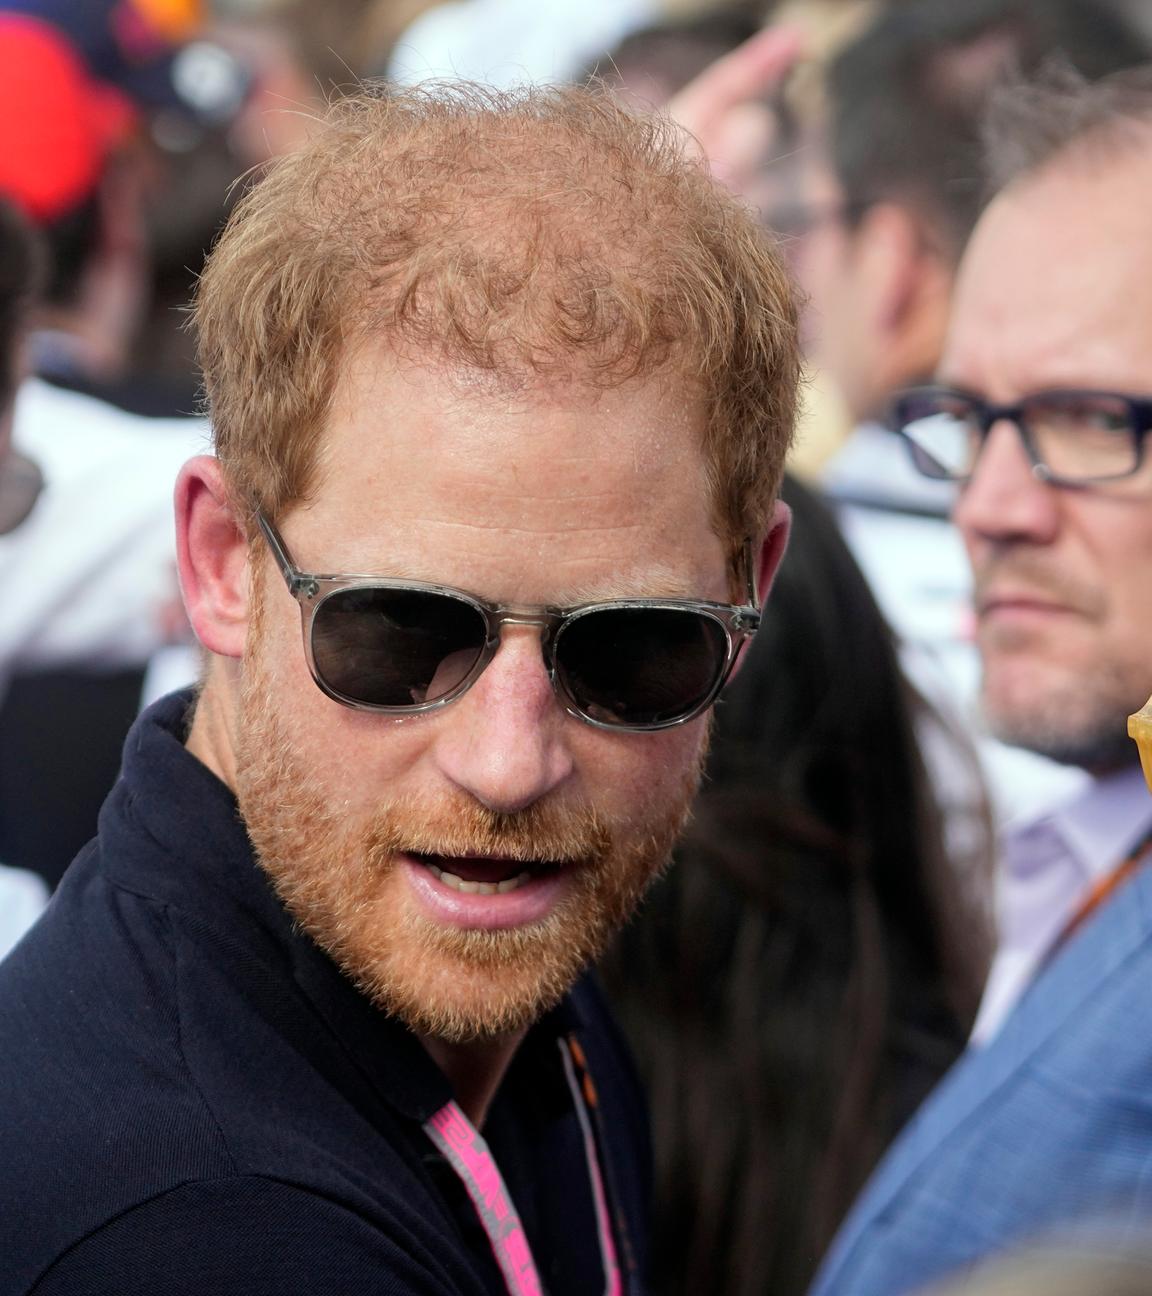 Prinz Harry trägt eine Sonnenbrille und steht zwischen mehrerem Menschen.